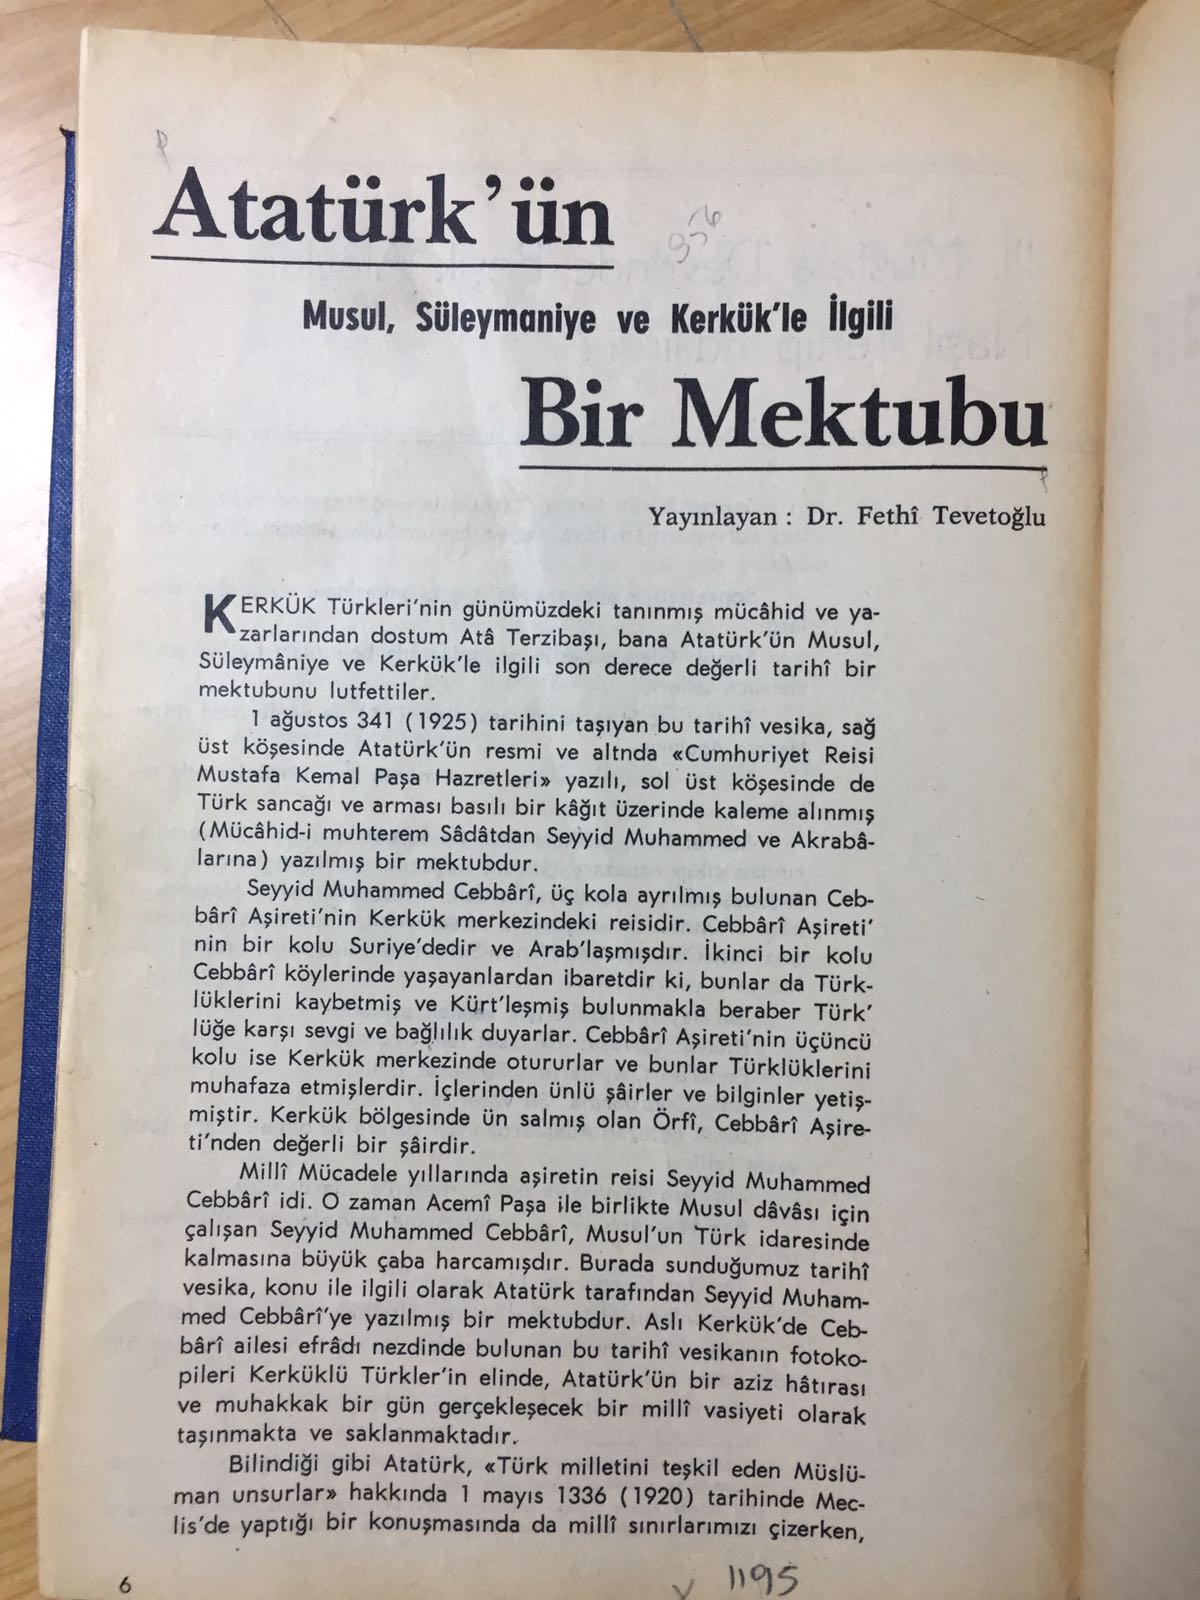 Atatürk'ün Kerkük-Musul mektubu